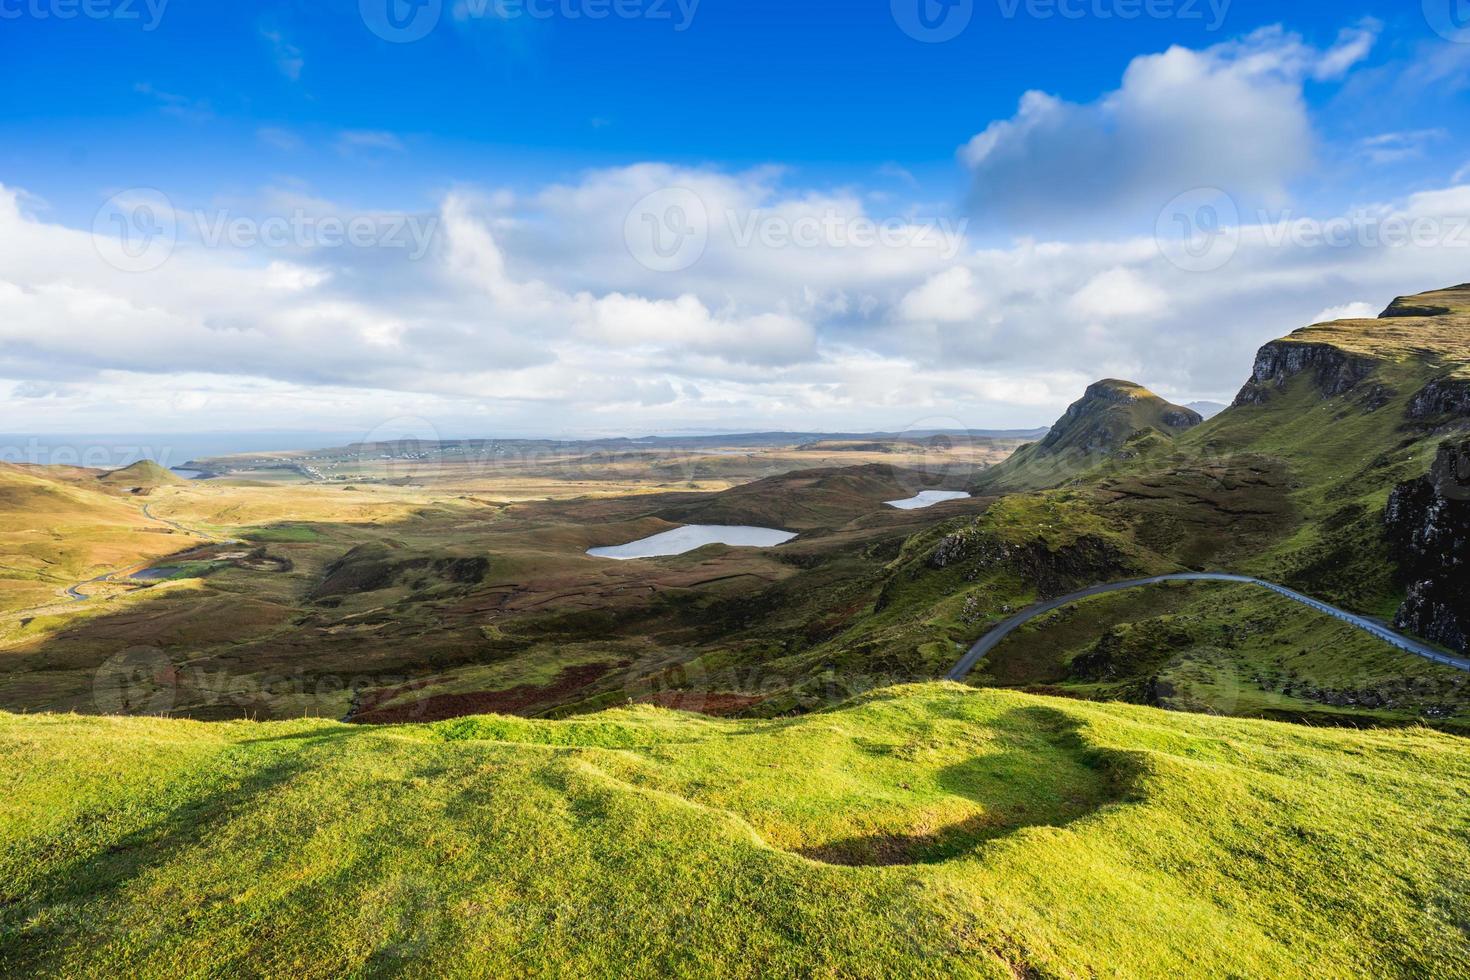 landskap utsikt över de quiraing bergen, Skottland foto